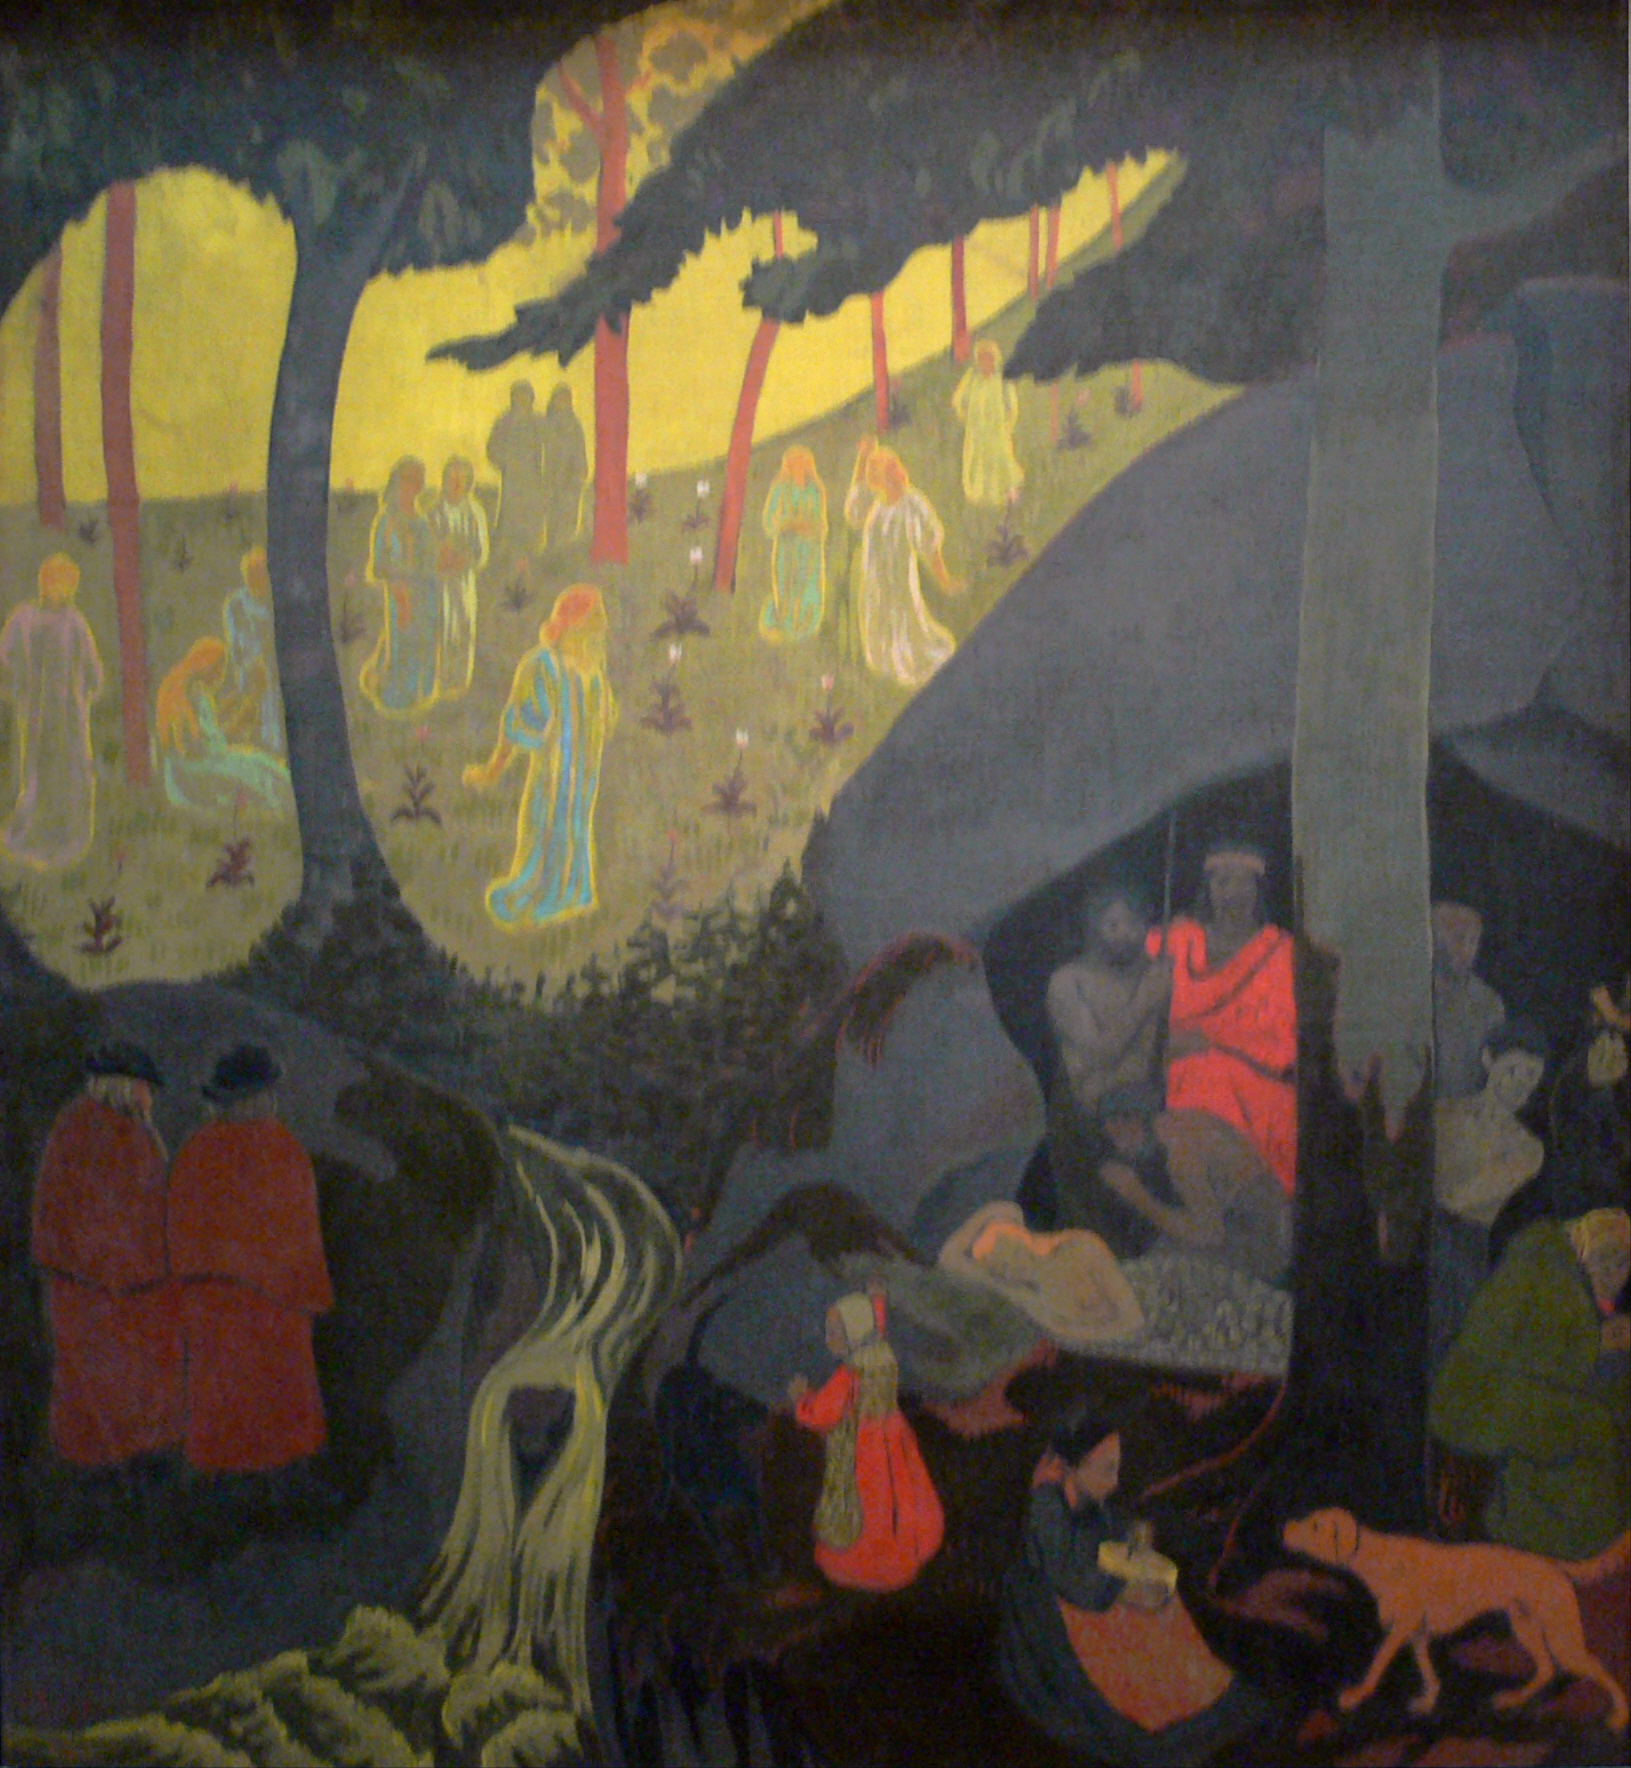 凯尔特传说 by 保罗 塞鲁西耶 - 1894 - 110.8 x 101 cm 达拉斯艺术博物馆